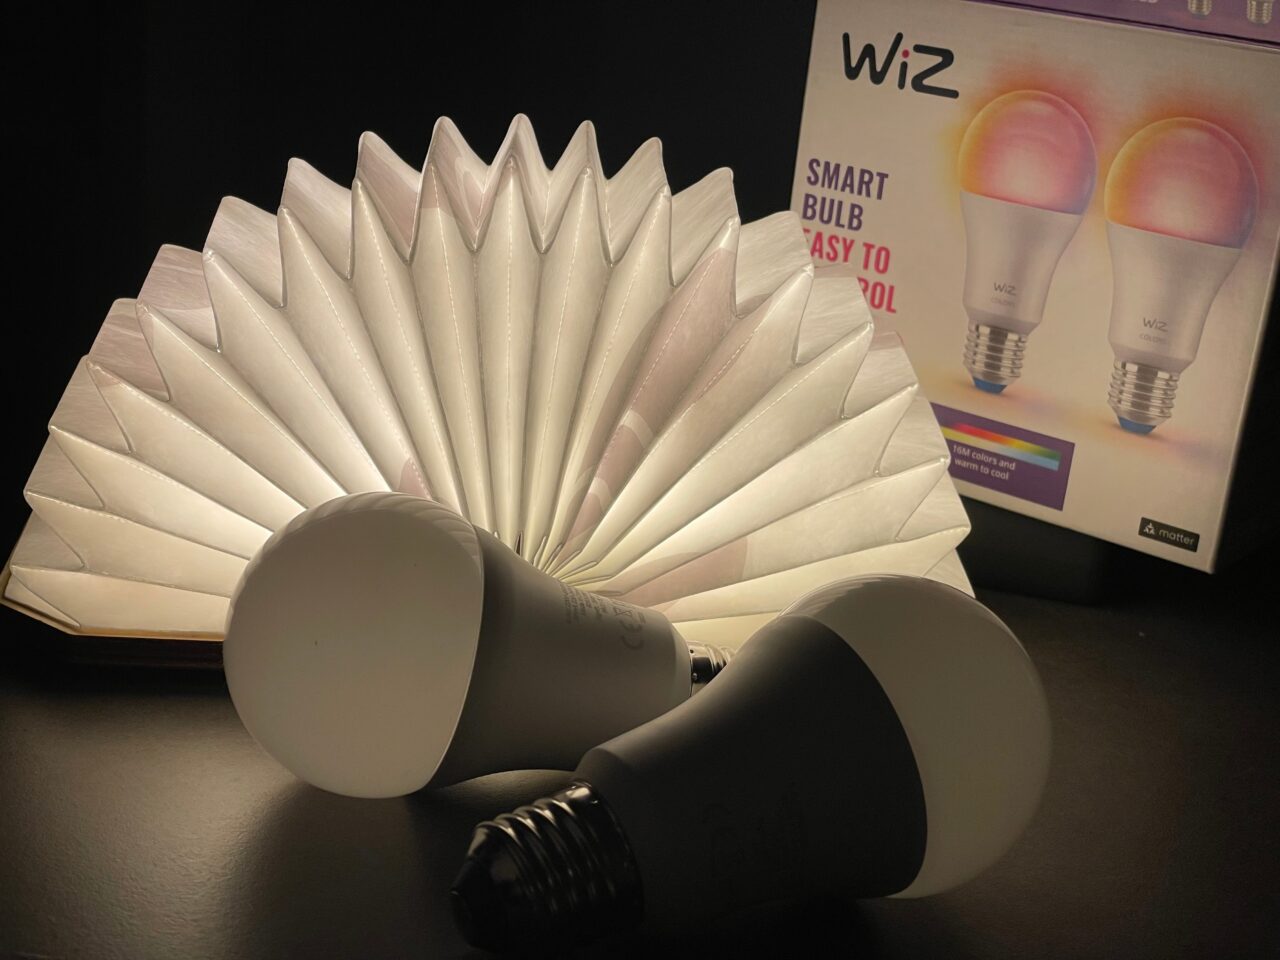 Dwie inteligentne żarówki LED firmy WiZ leżące na ciemnej powierzchni obok rozłożonej lampy książkowej i opakowania produktu.